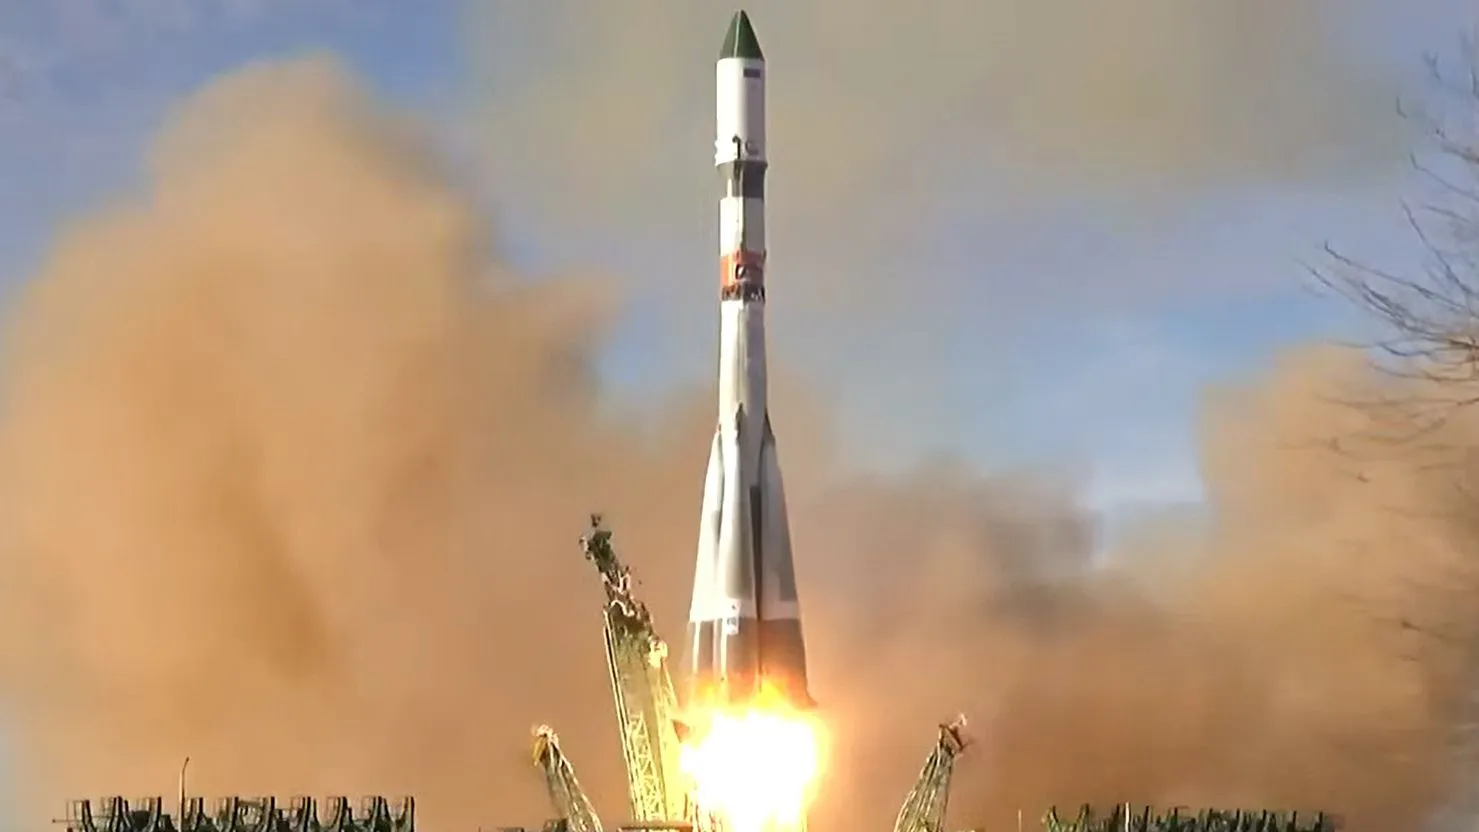 Mehr über den Artikel erfahren Sehen Sie, wie Russland heute Abend ein Progress-Versorgungsschiff zum Valentinstag zur ISS startet – mit diesem kostenlosen Livestream